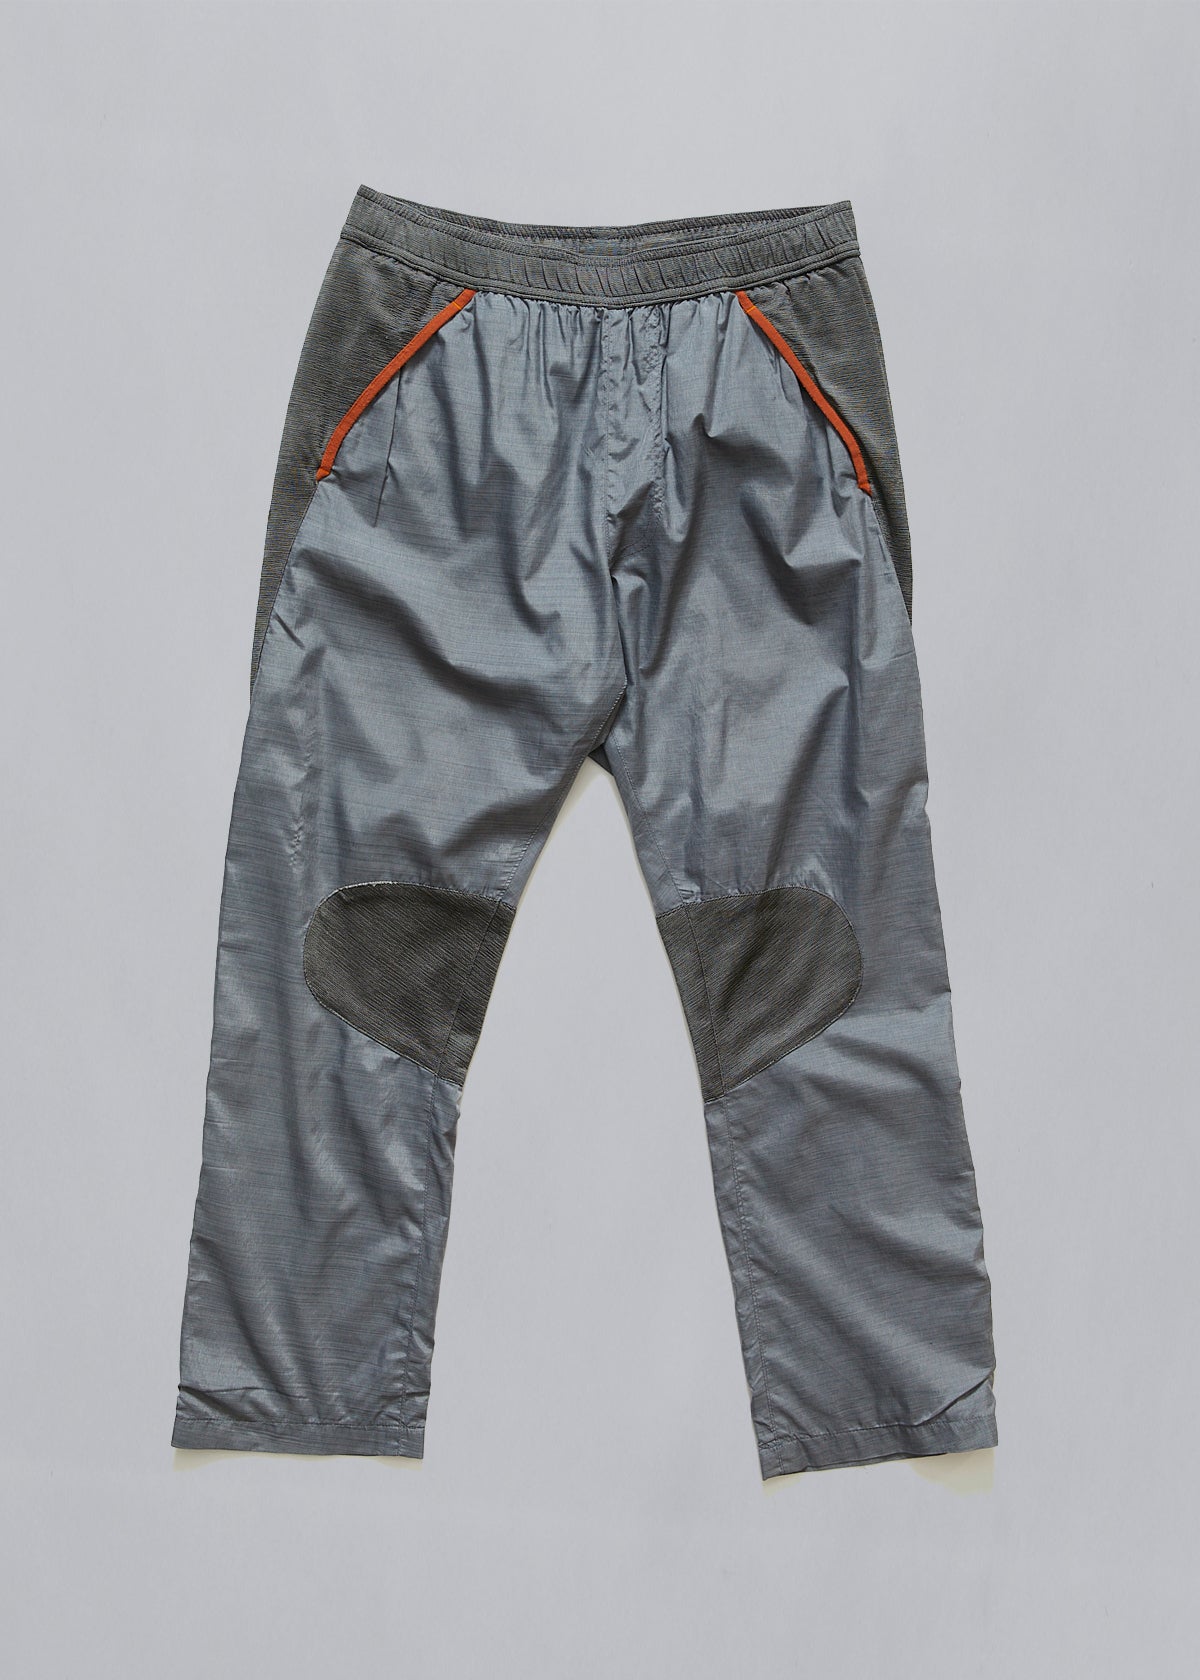 Nike/Gyakusou Panneled Running Pants Orange AW2011 - Medium